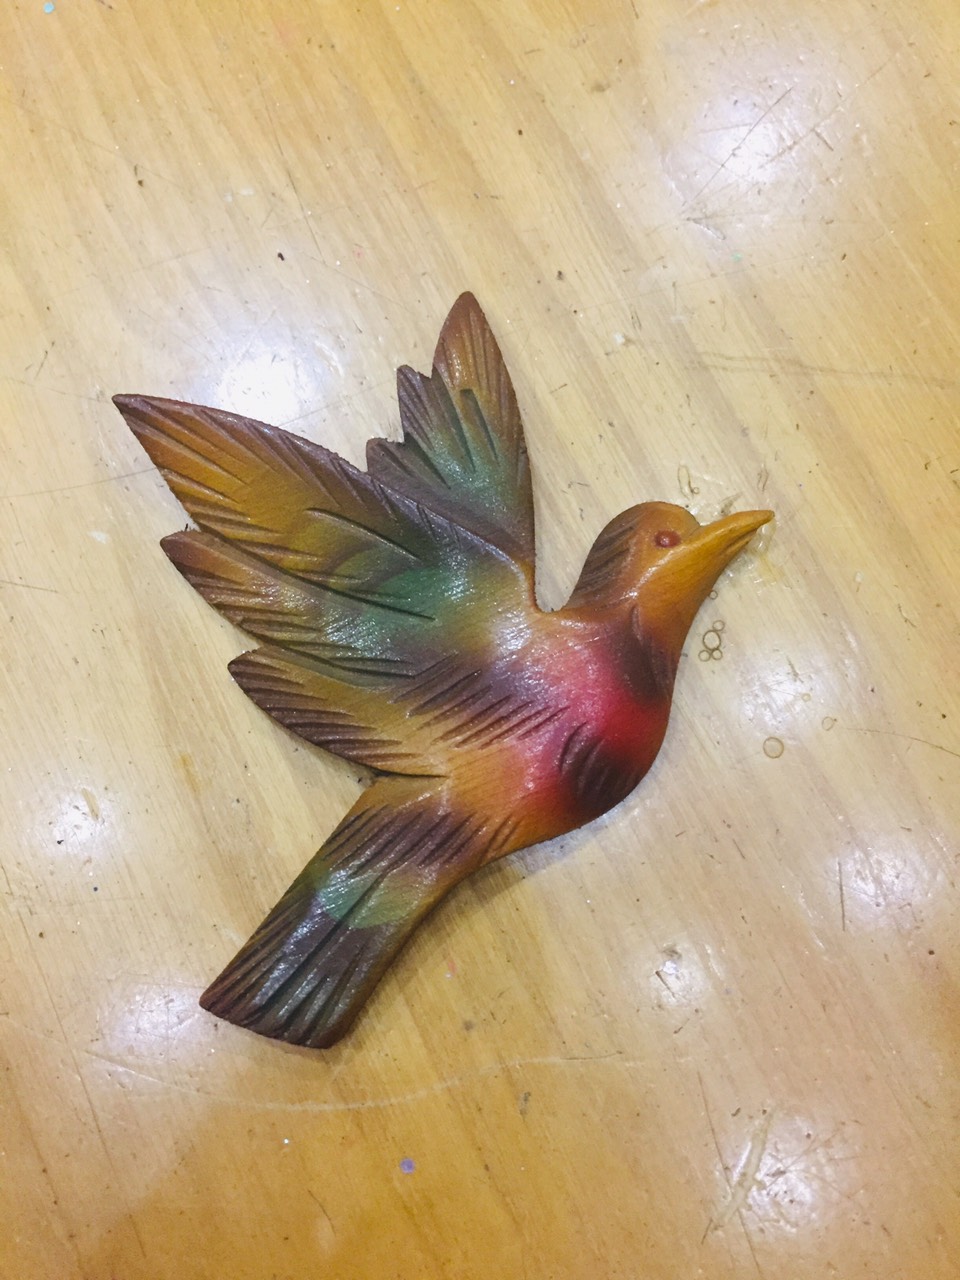 Chim én sắc màu trang trí đồng hồ cuckoo - mã số MS975